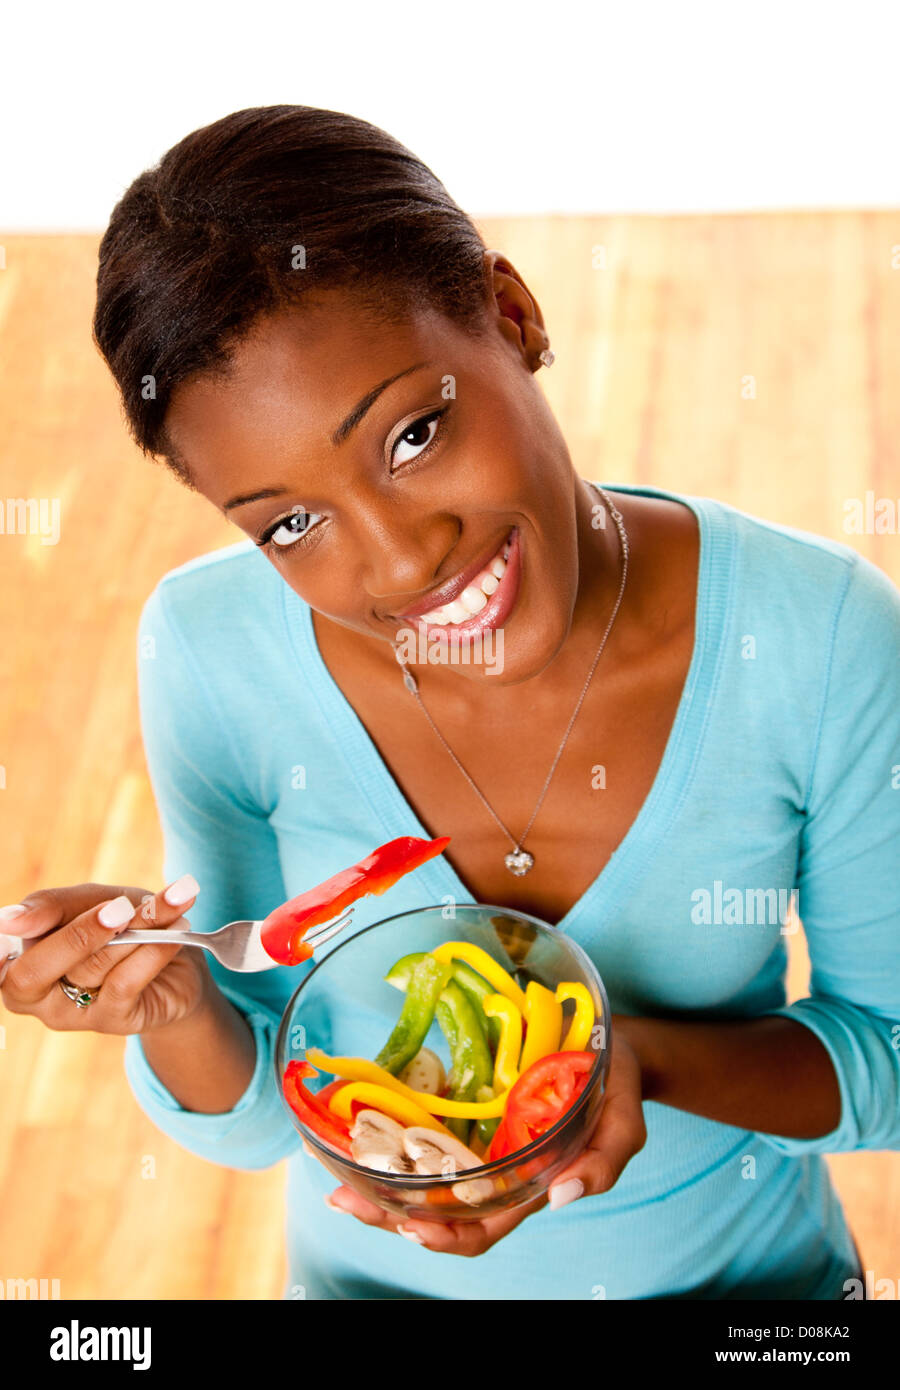 Bellos atractivos feliz sonriente joven conscientes de la salud comer ensalada saludable de un tazón. Foto de stock